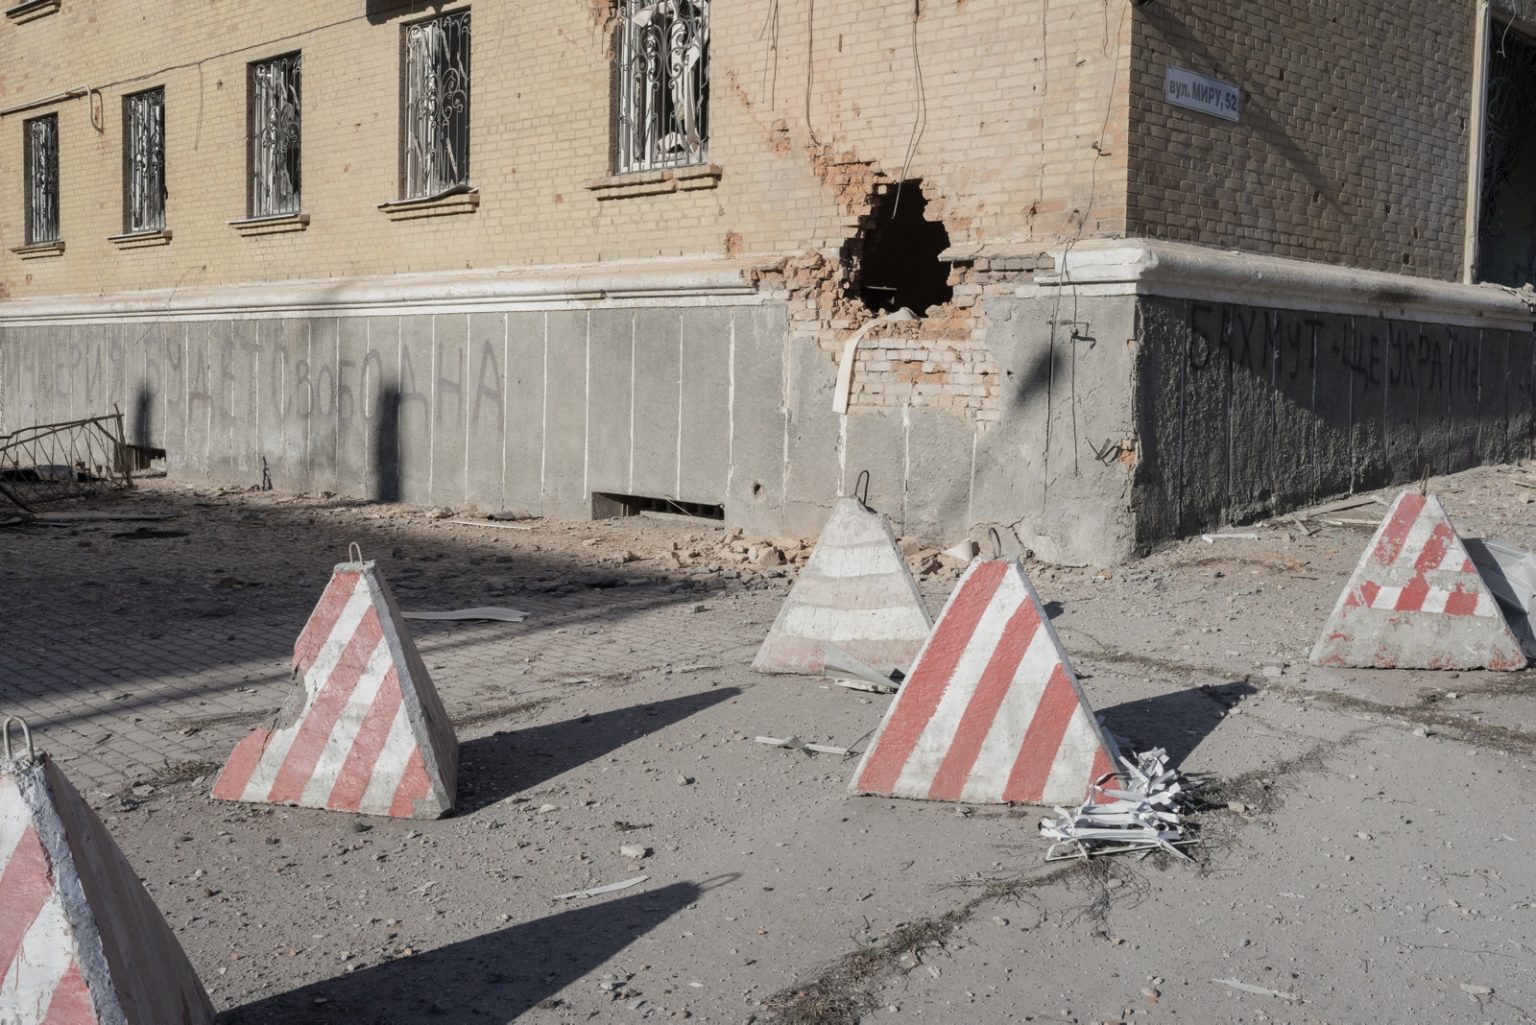 UKRAINE, Bakhmut. January 25, 2023 - A building damaged by shelling in the centre of Bakhmut. ><
UCRAINA, Bakhmut. 25 gennaio 2023 - Un edificio danneggiato dai bombardamenti nel centro di Bakhmut.